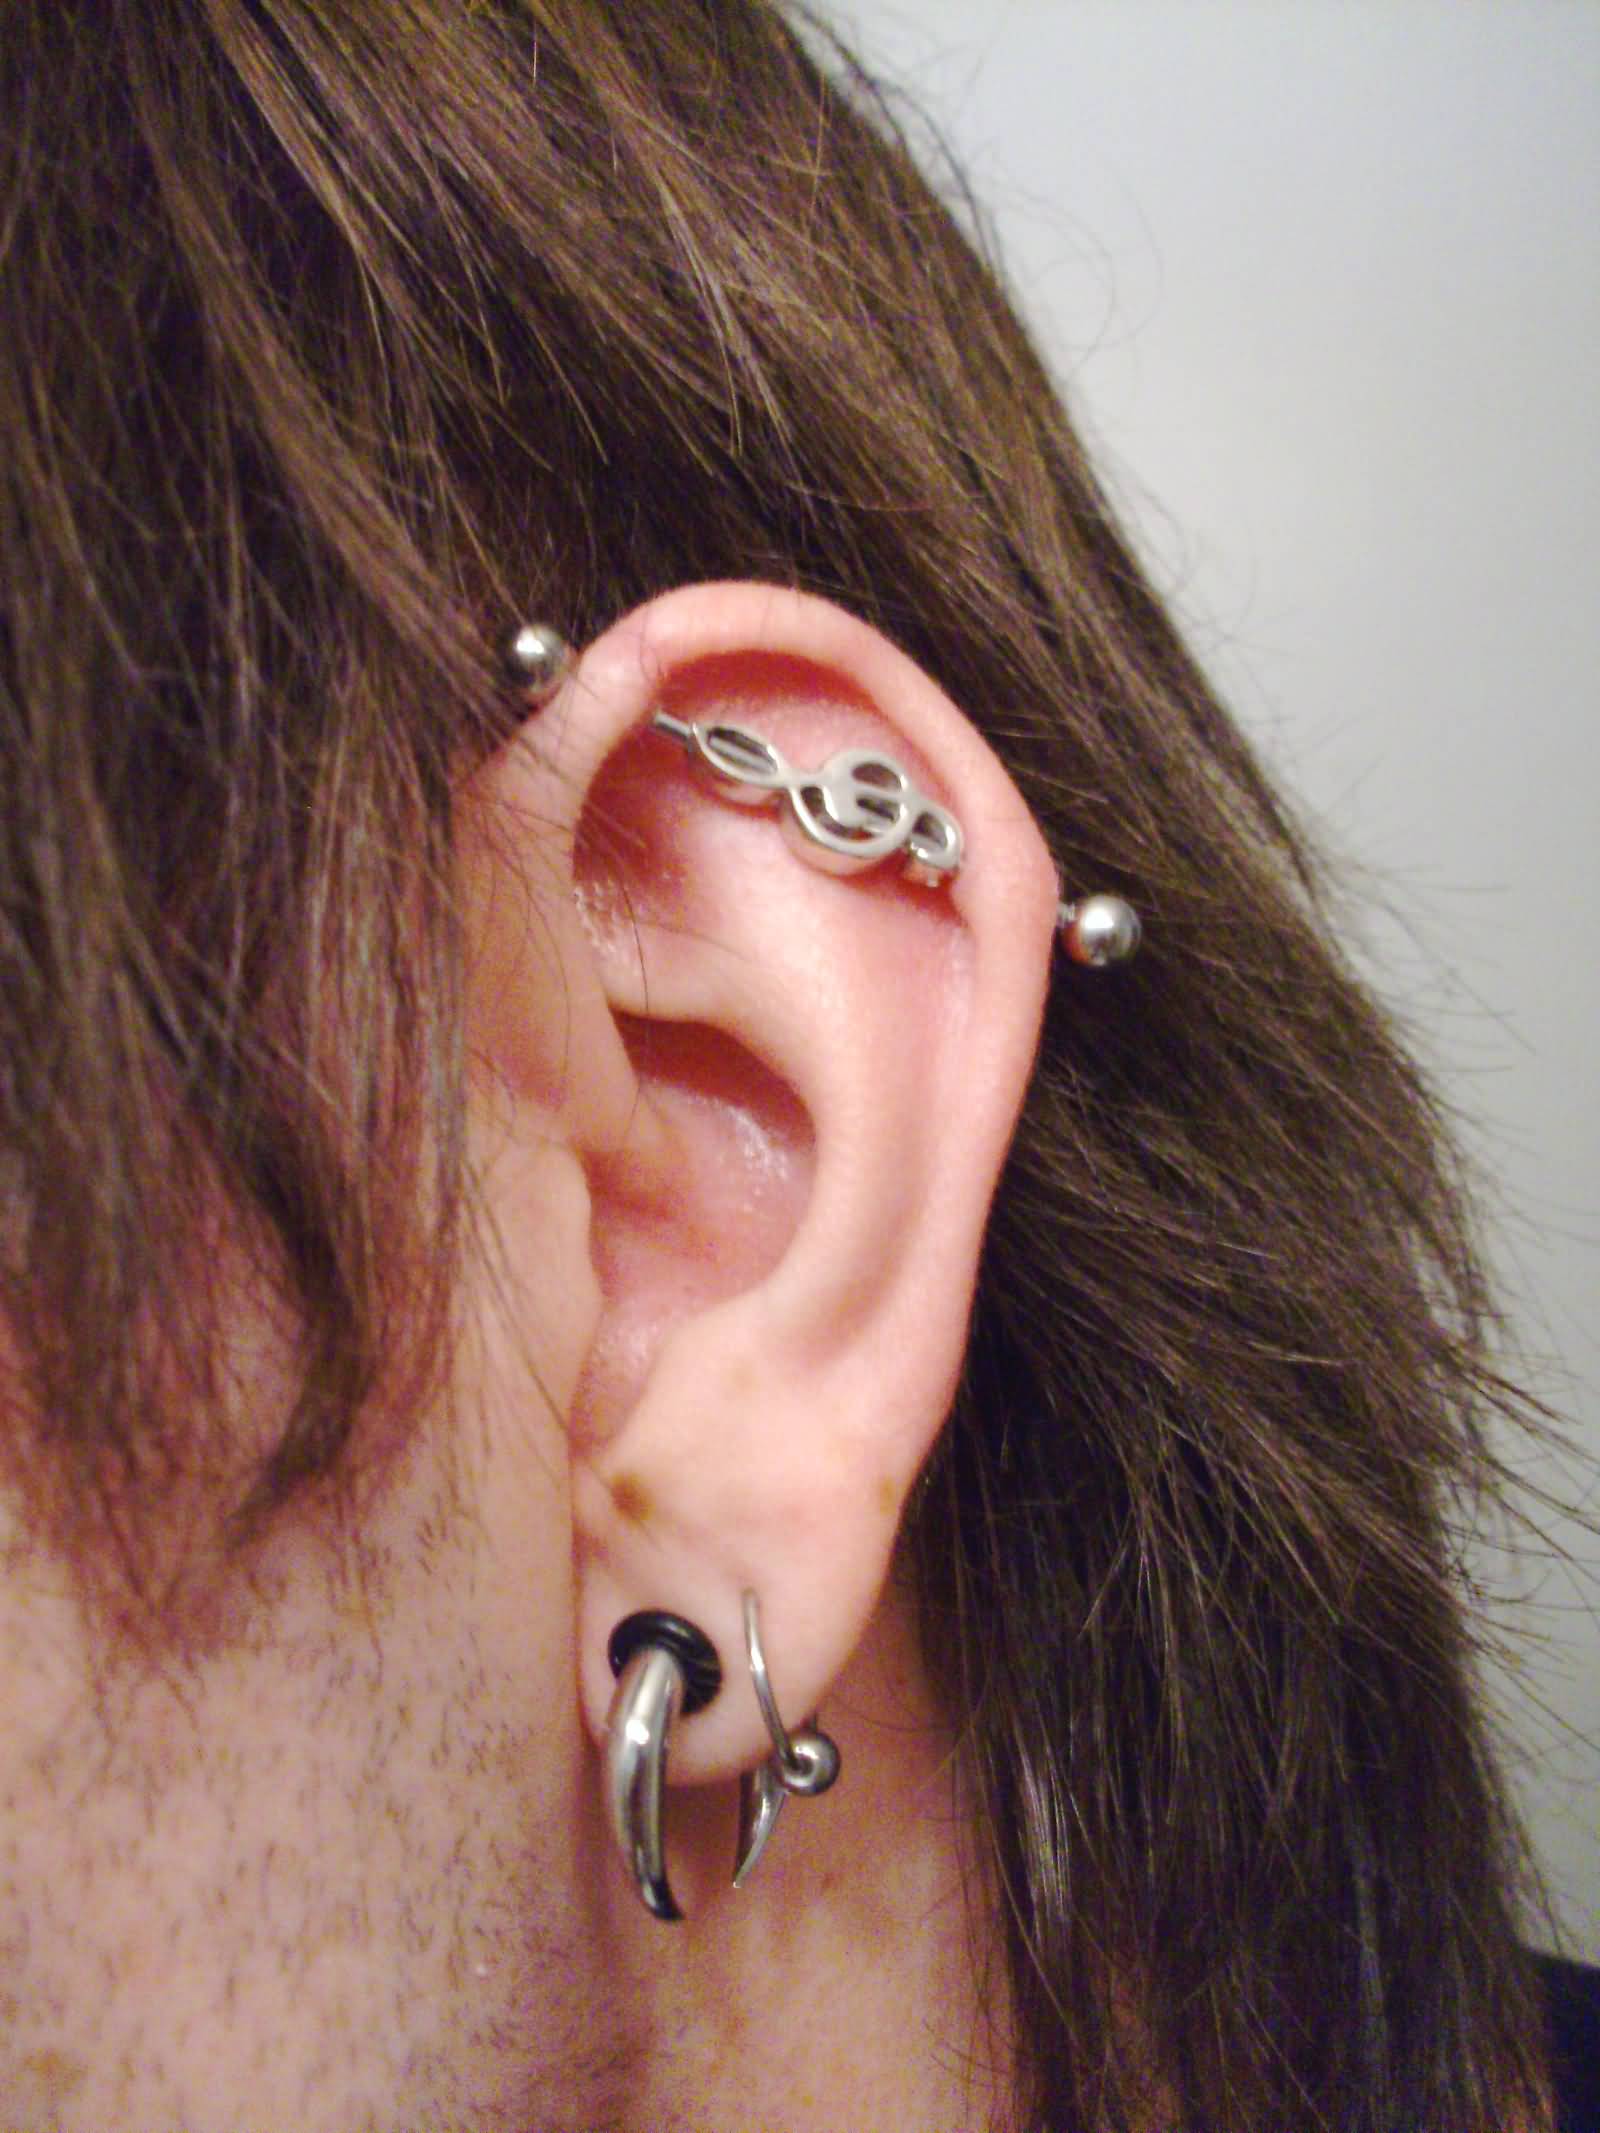 Left Ear Lobe And Industrial Piercing On Left Ear